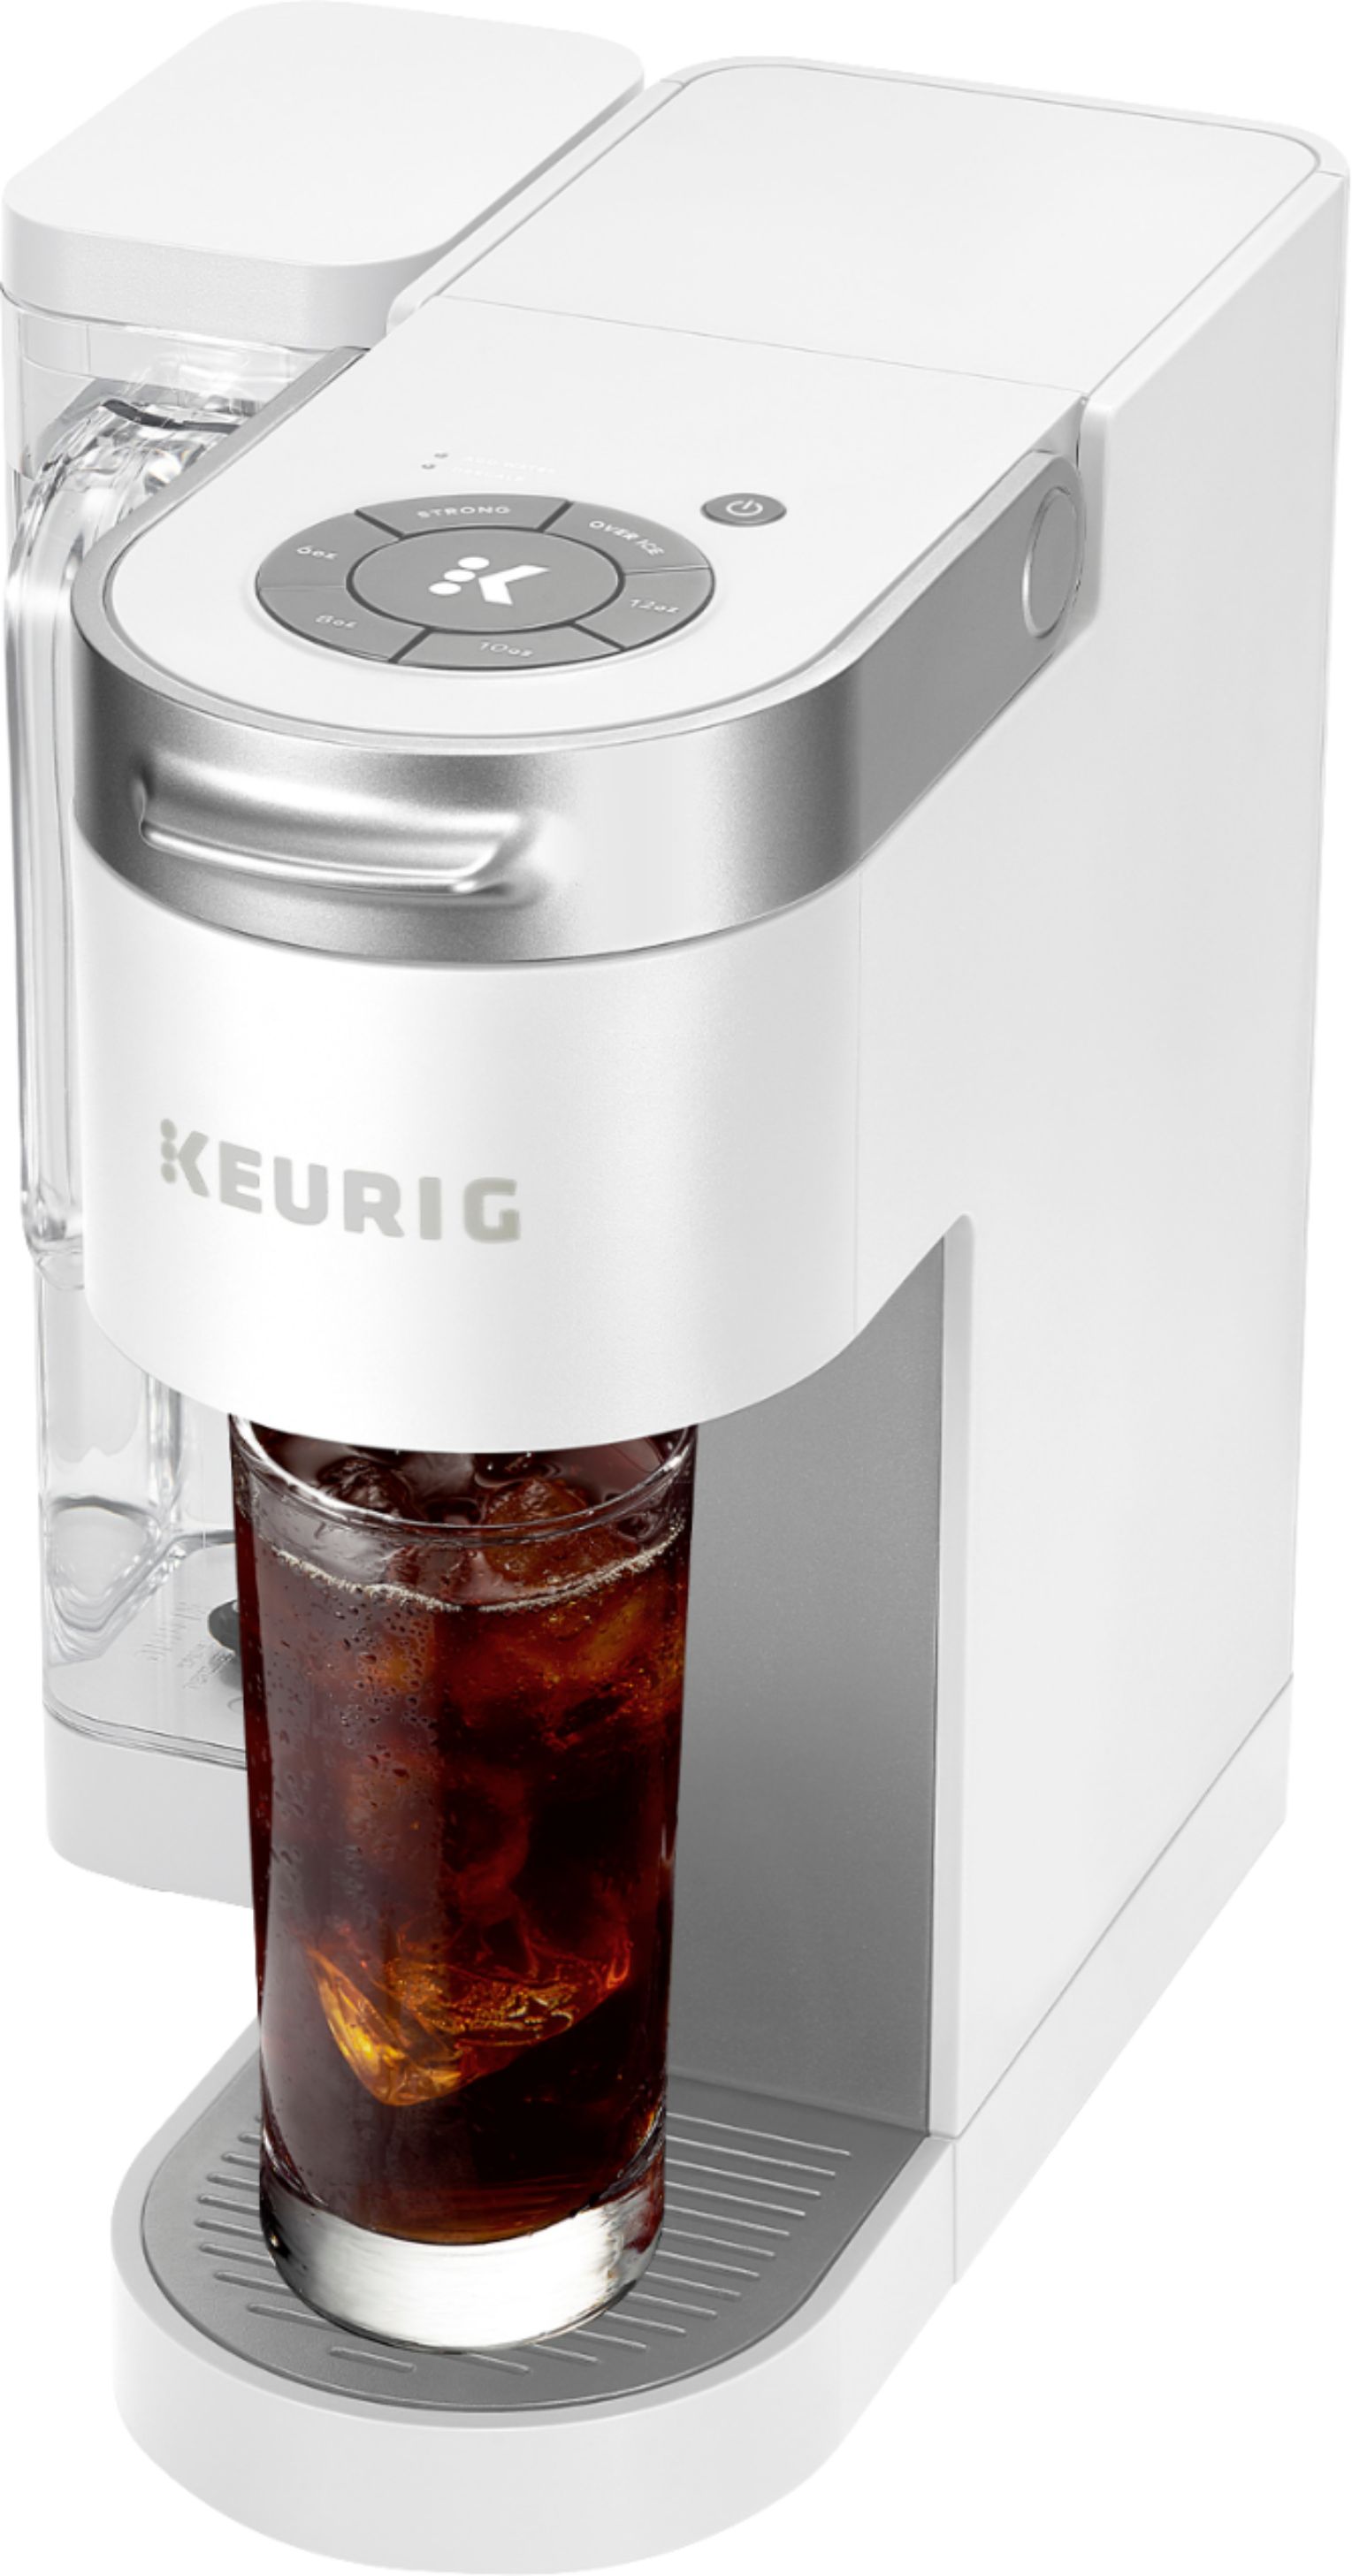 Keurig K-supreme Single Serve K-cup Pod Coffee Maker : Target